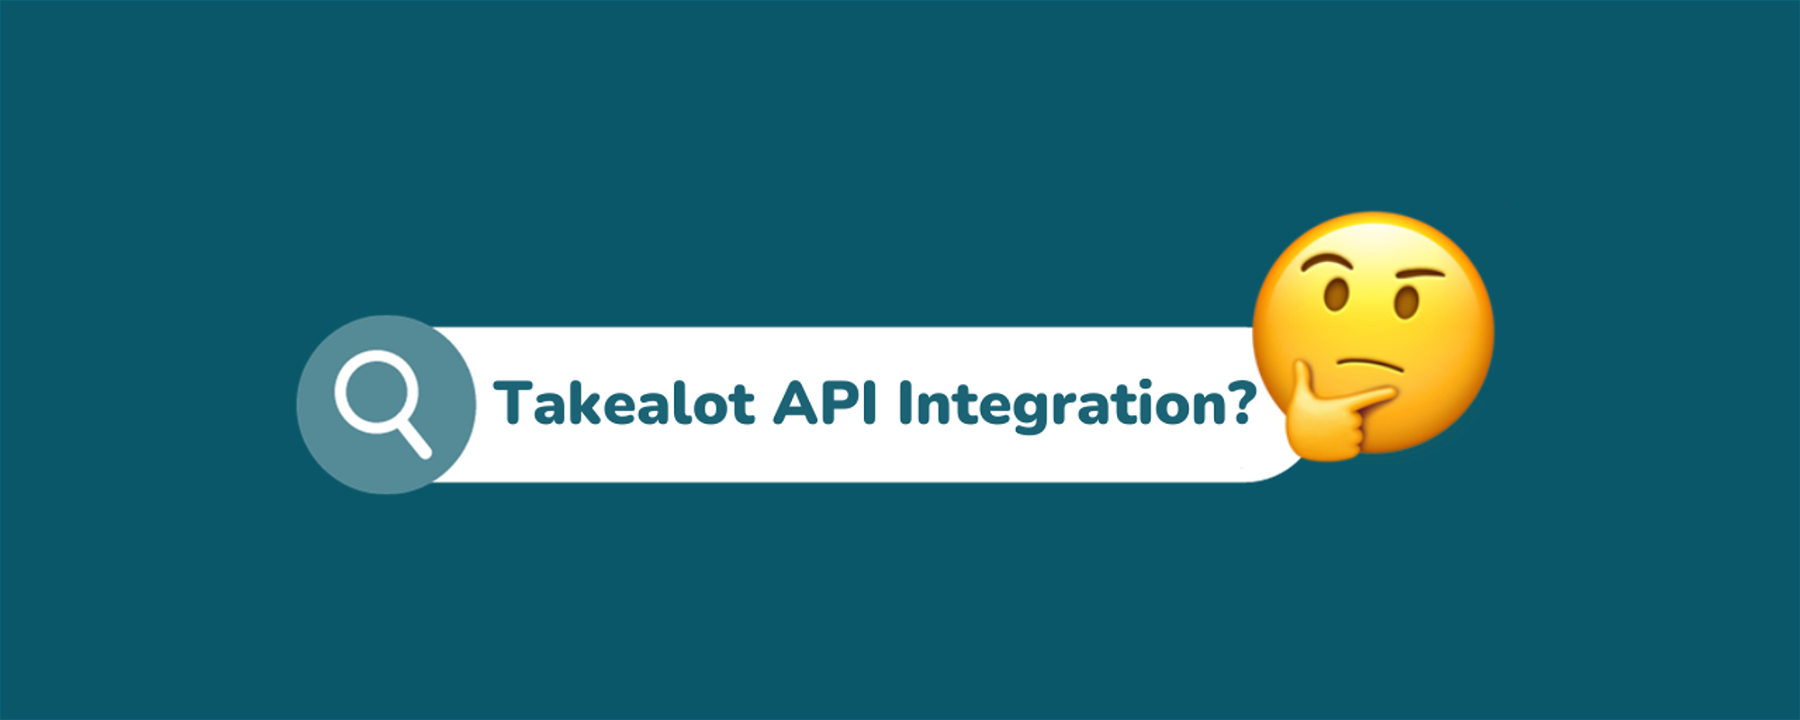 Takealot API Integration Explained